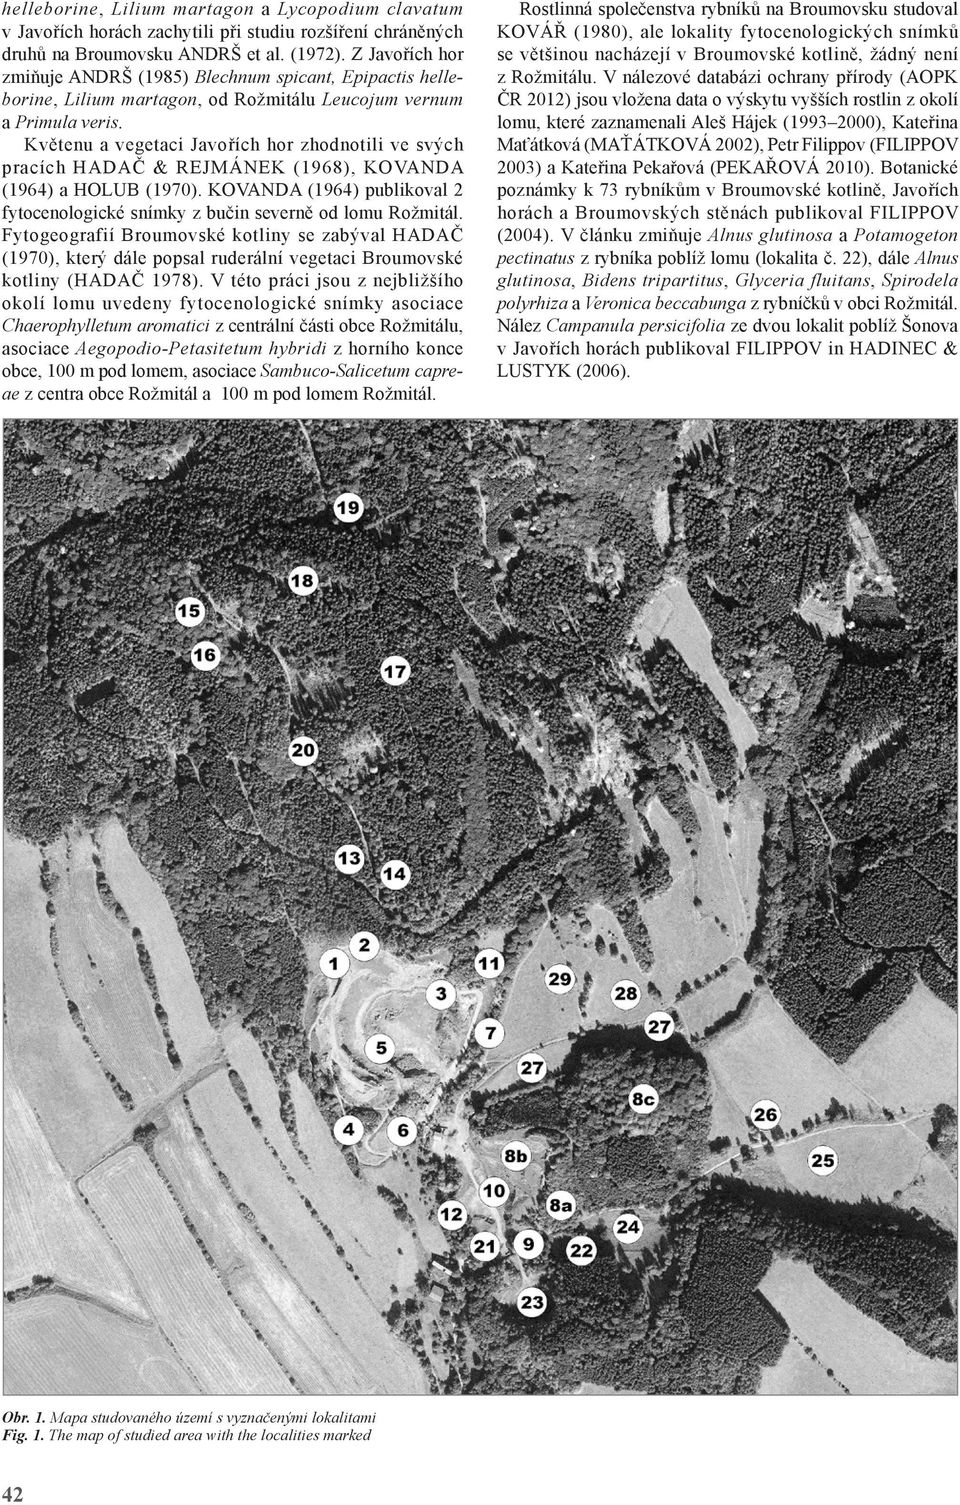 Květenu a vegetaci Javořích hor zhodnotili ve svých pracích HADAČ & REJMÁNEK (1968), KOVANDA (1964) a HOLUB (1970). KOVANDA (1964) publikoval 2 fytocenologické snímky z bučin severně od lomu Rožmitál.